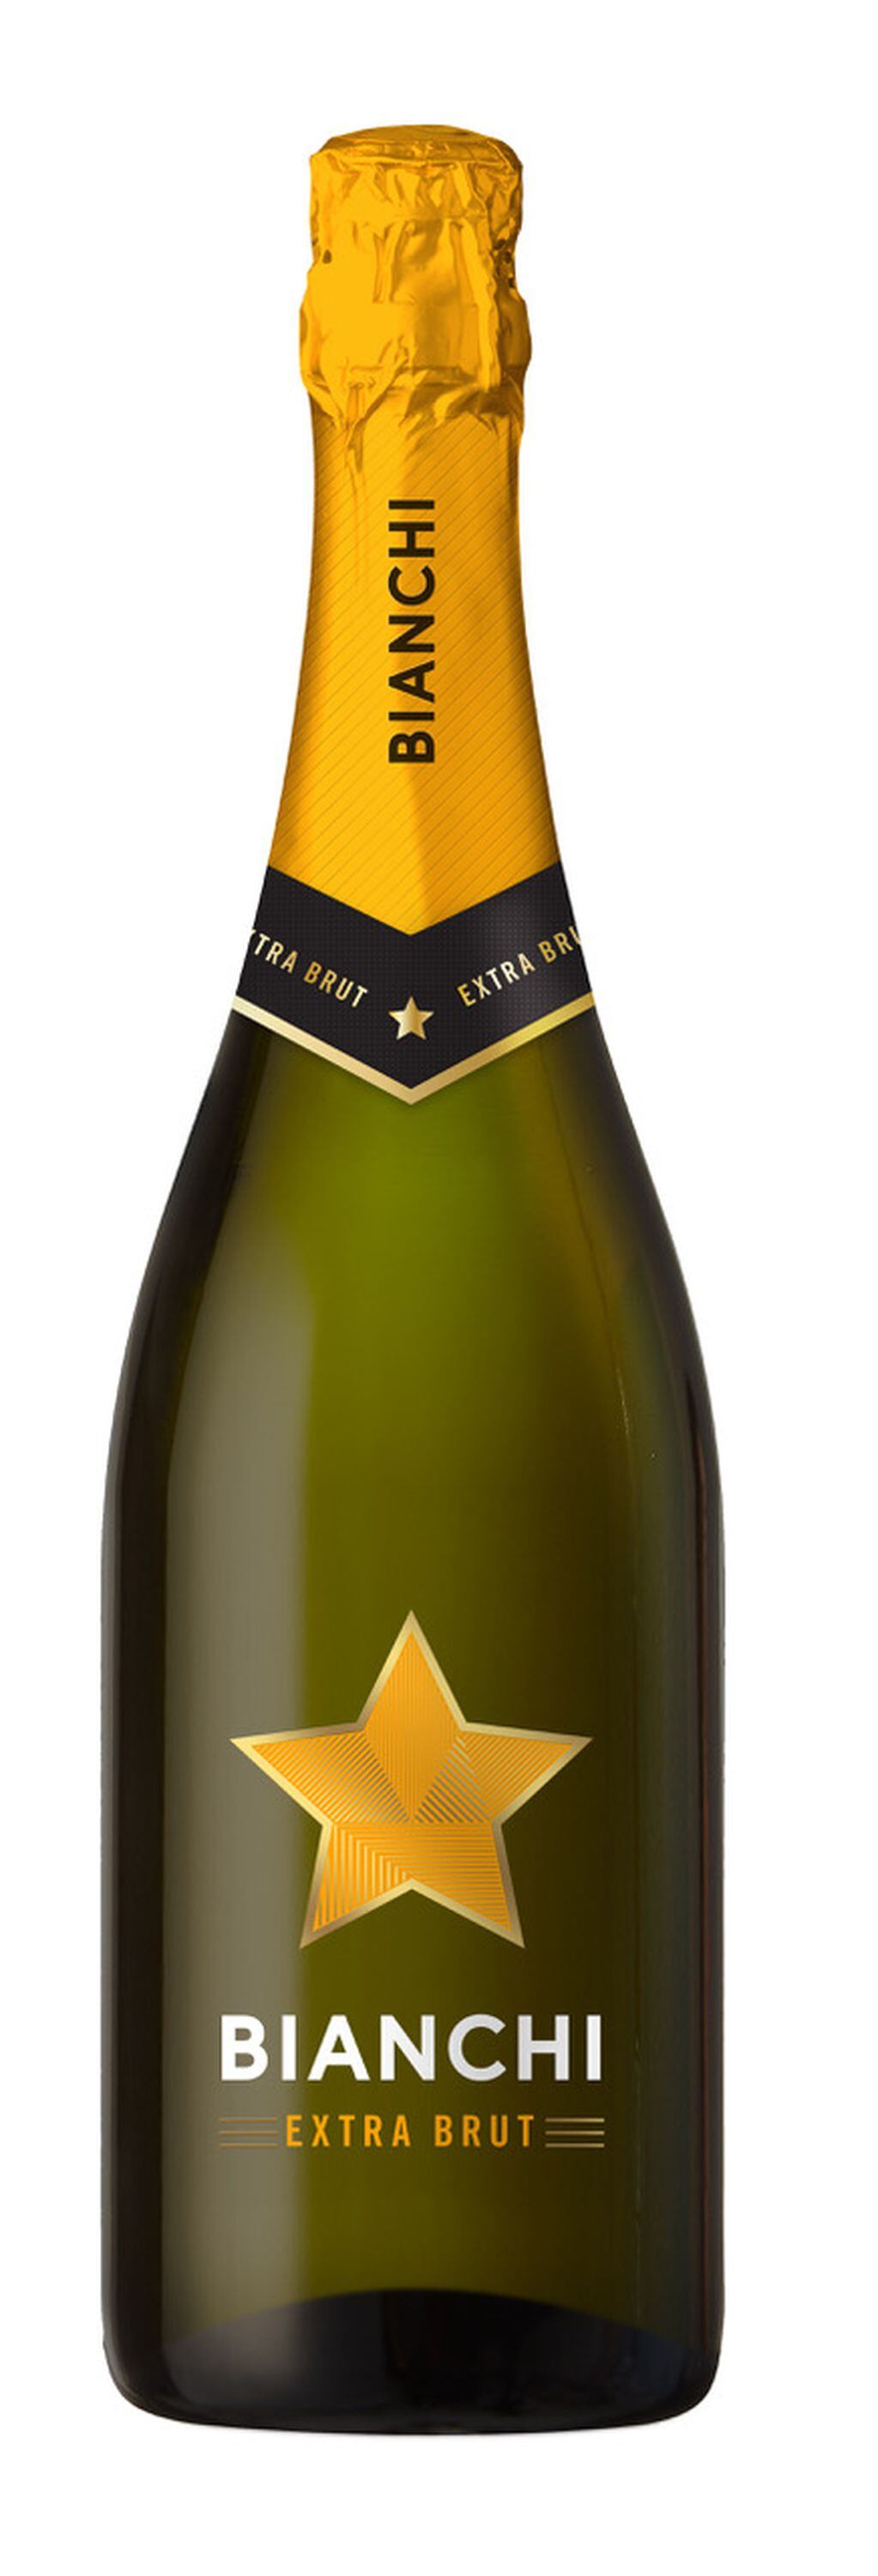 La bodega mendocina es reconocida por sus vinos espumantes, como Bianchi Estrella. - Gentileza